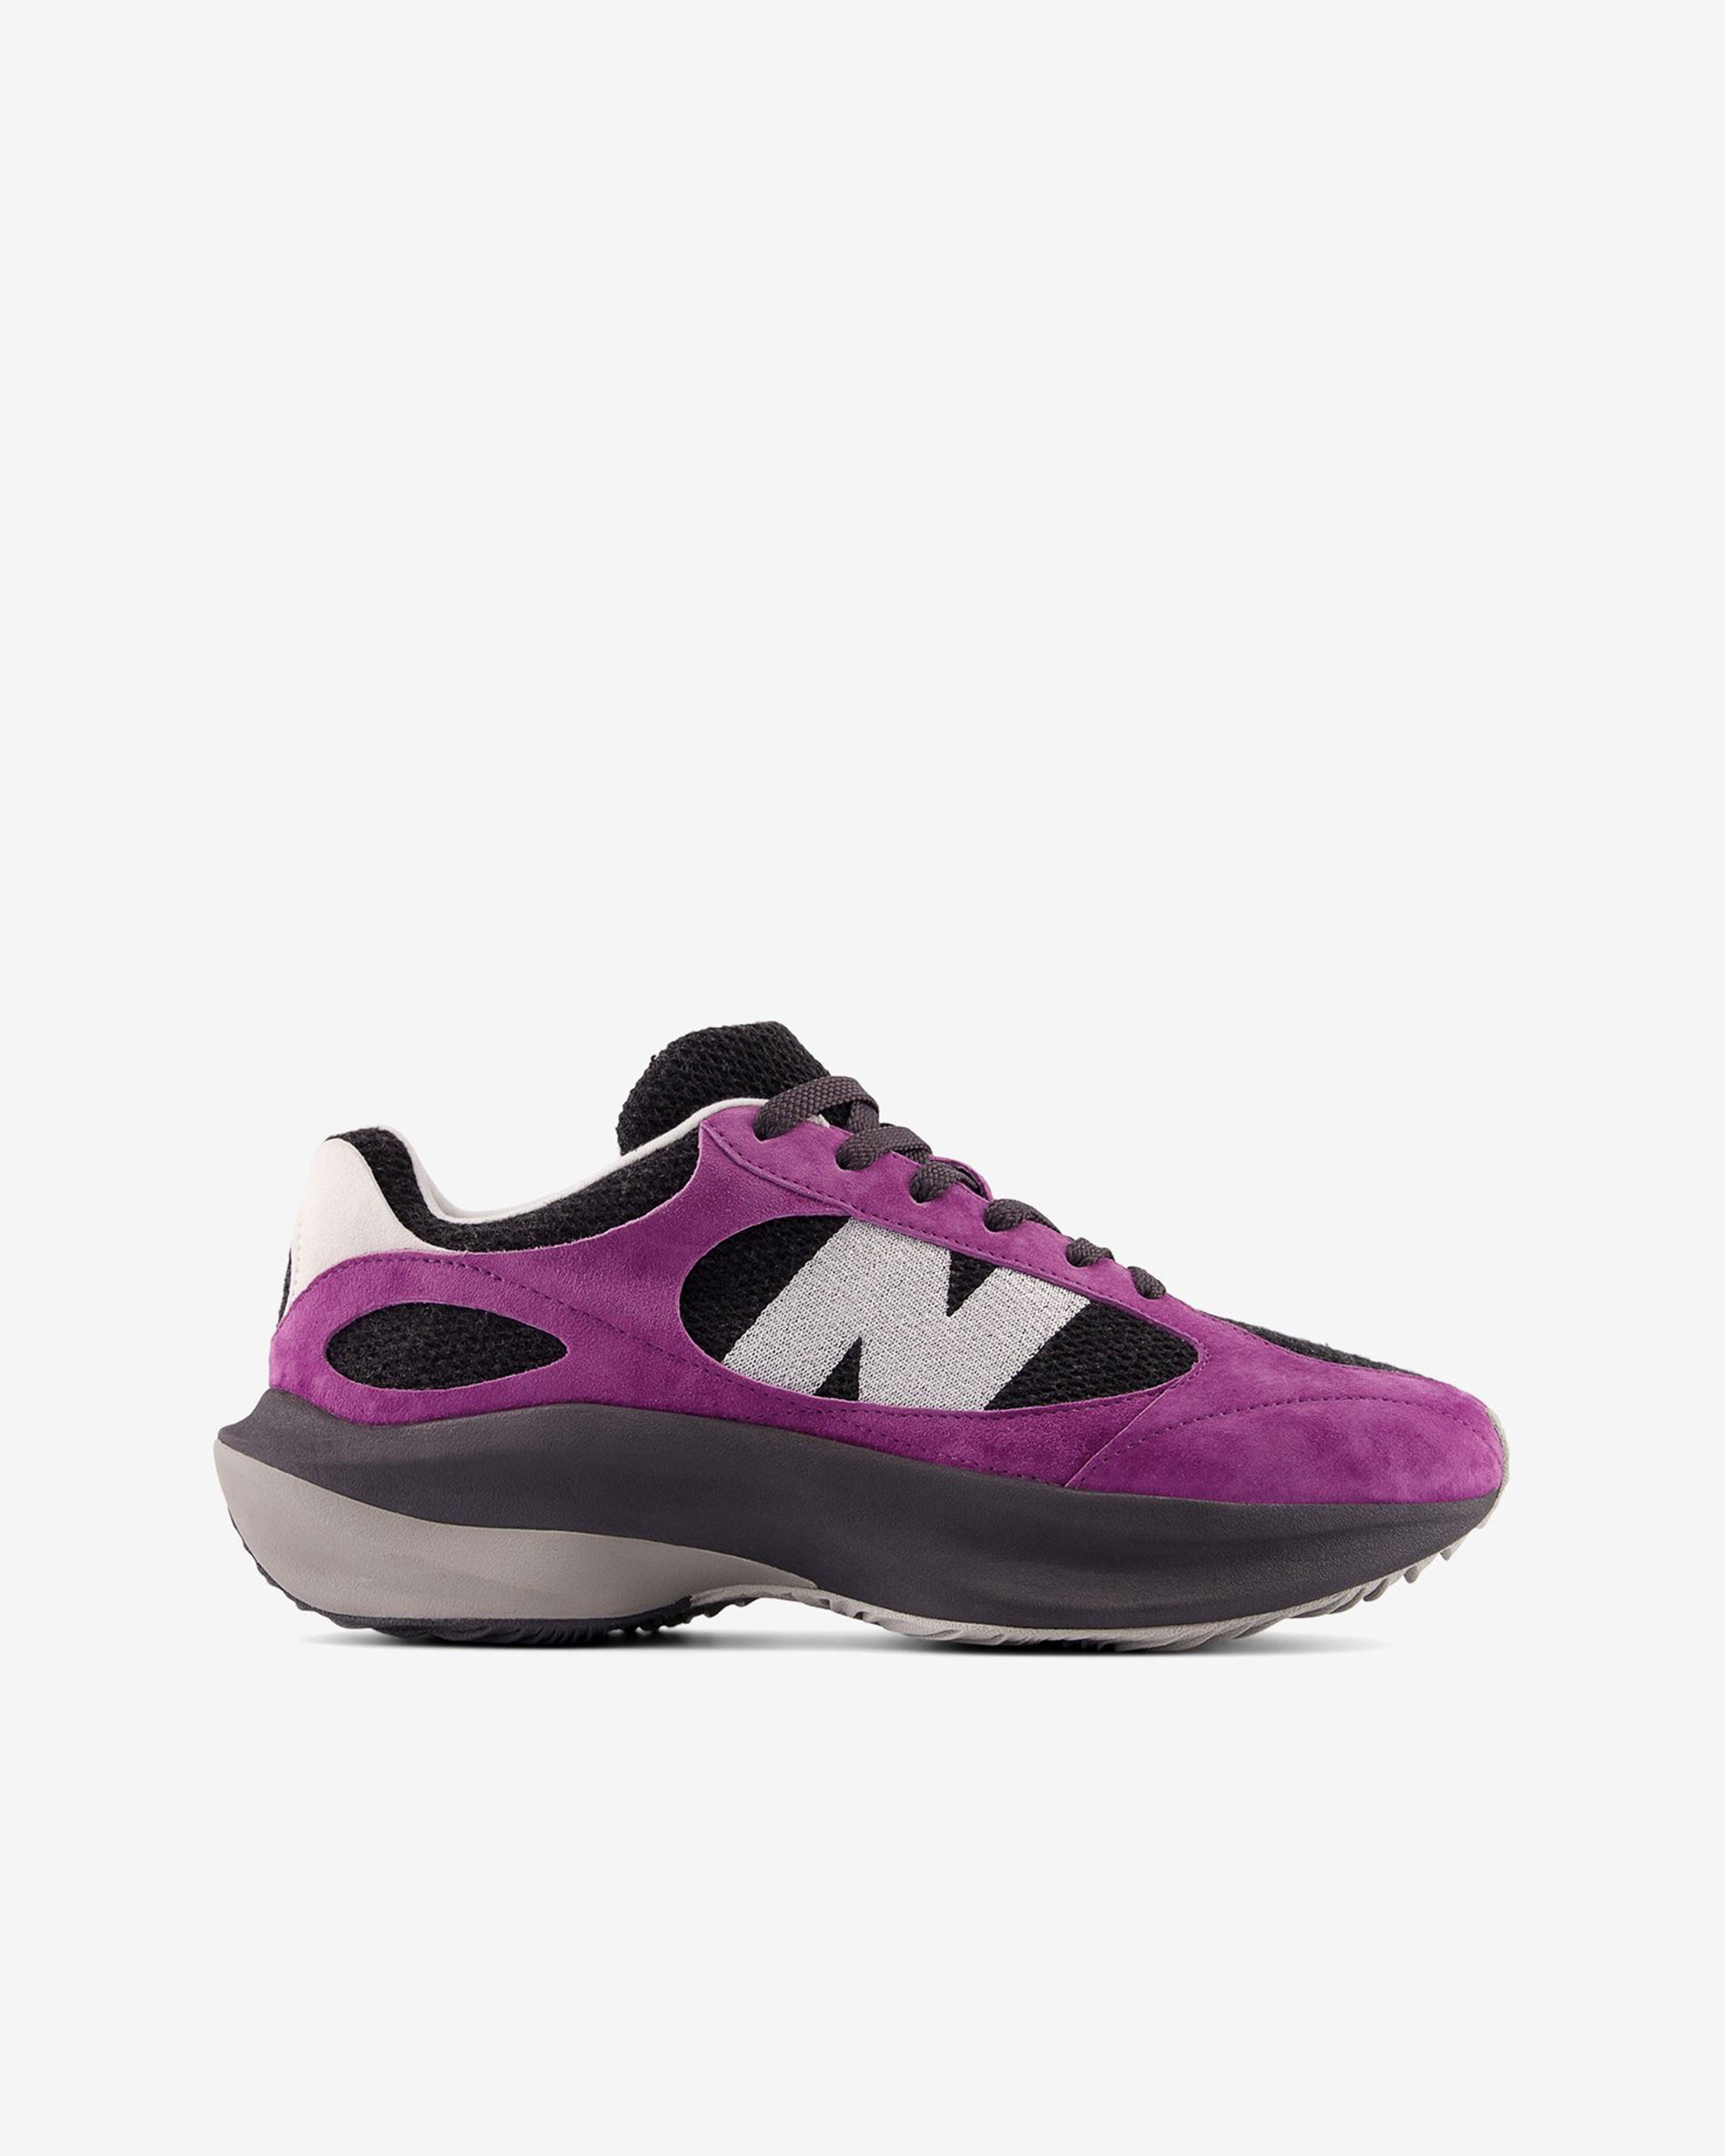 New Balance - UWRPDFSA Sneakers - (Purple/Black) by NEW BALANCE